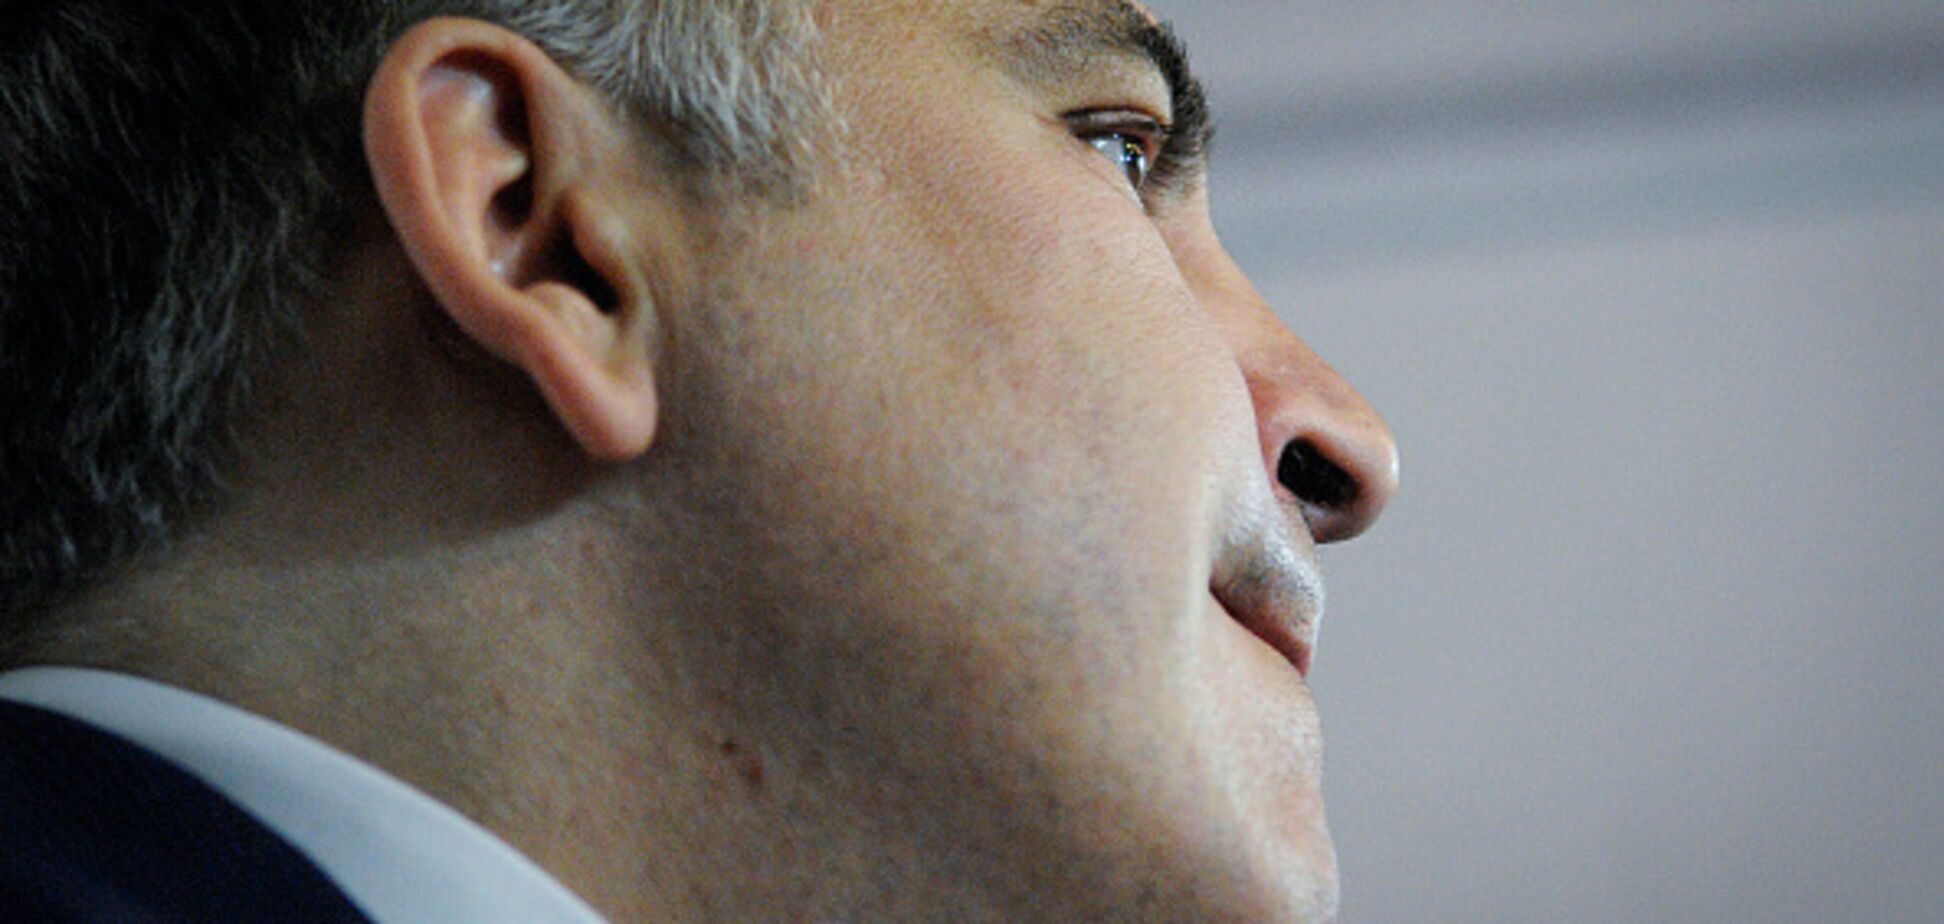 Уже в 2018 году: Саакашвили заявил о намерениях вернуться к власти в Грузии